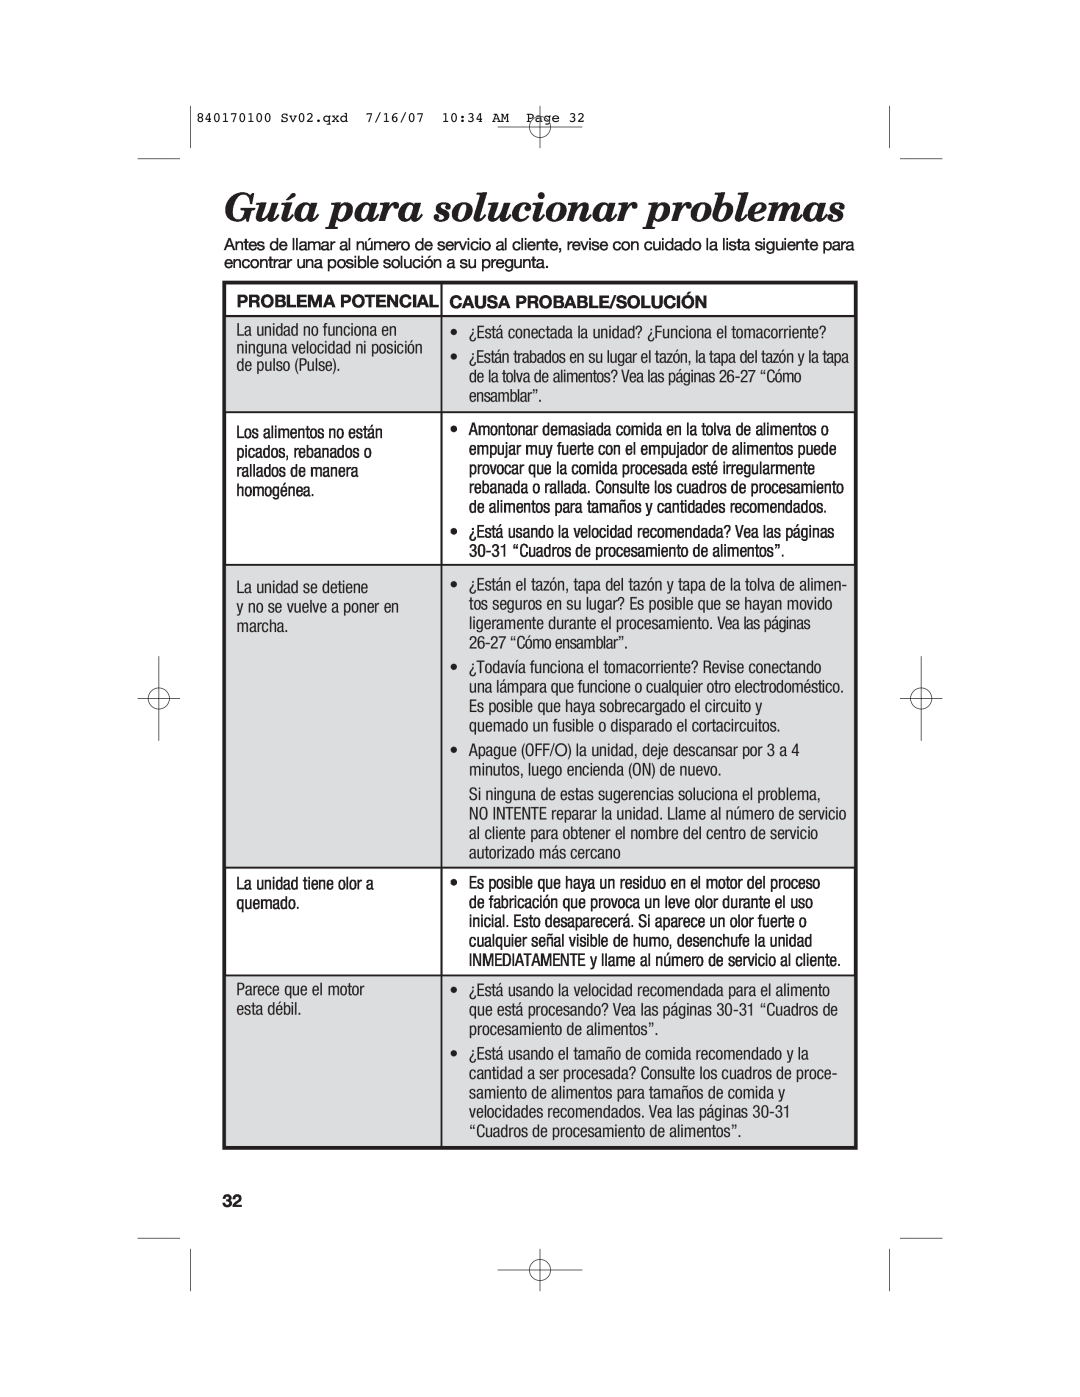 Hamilton Beach 70595H, 70590H, 70590CR manual Guía para solucionar problemas, Problema Potencial, Causa Probable/Solución 